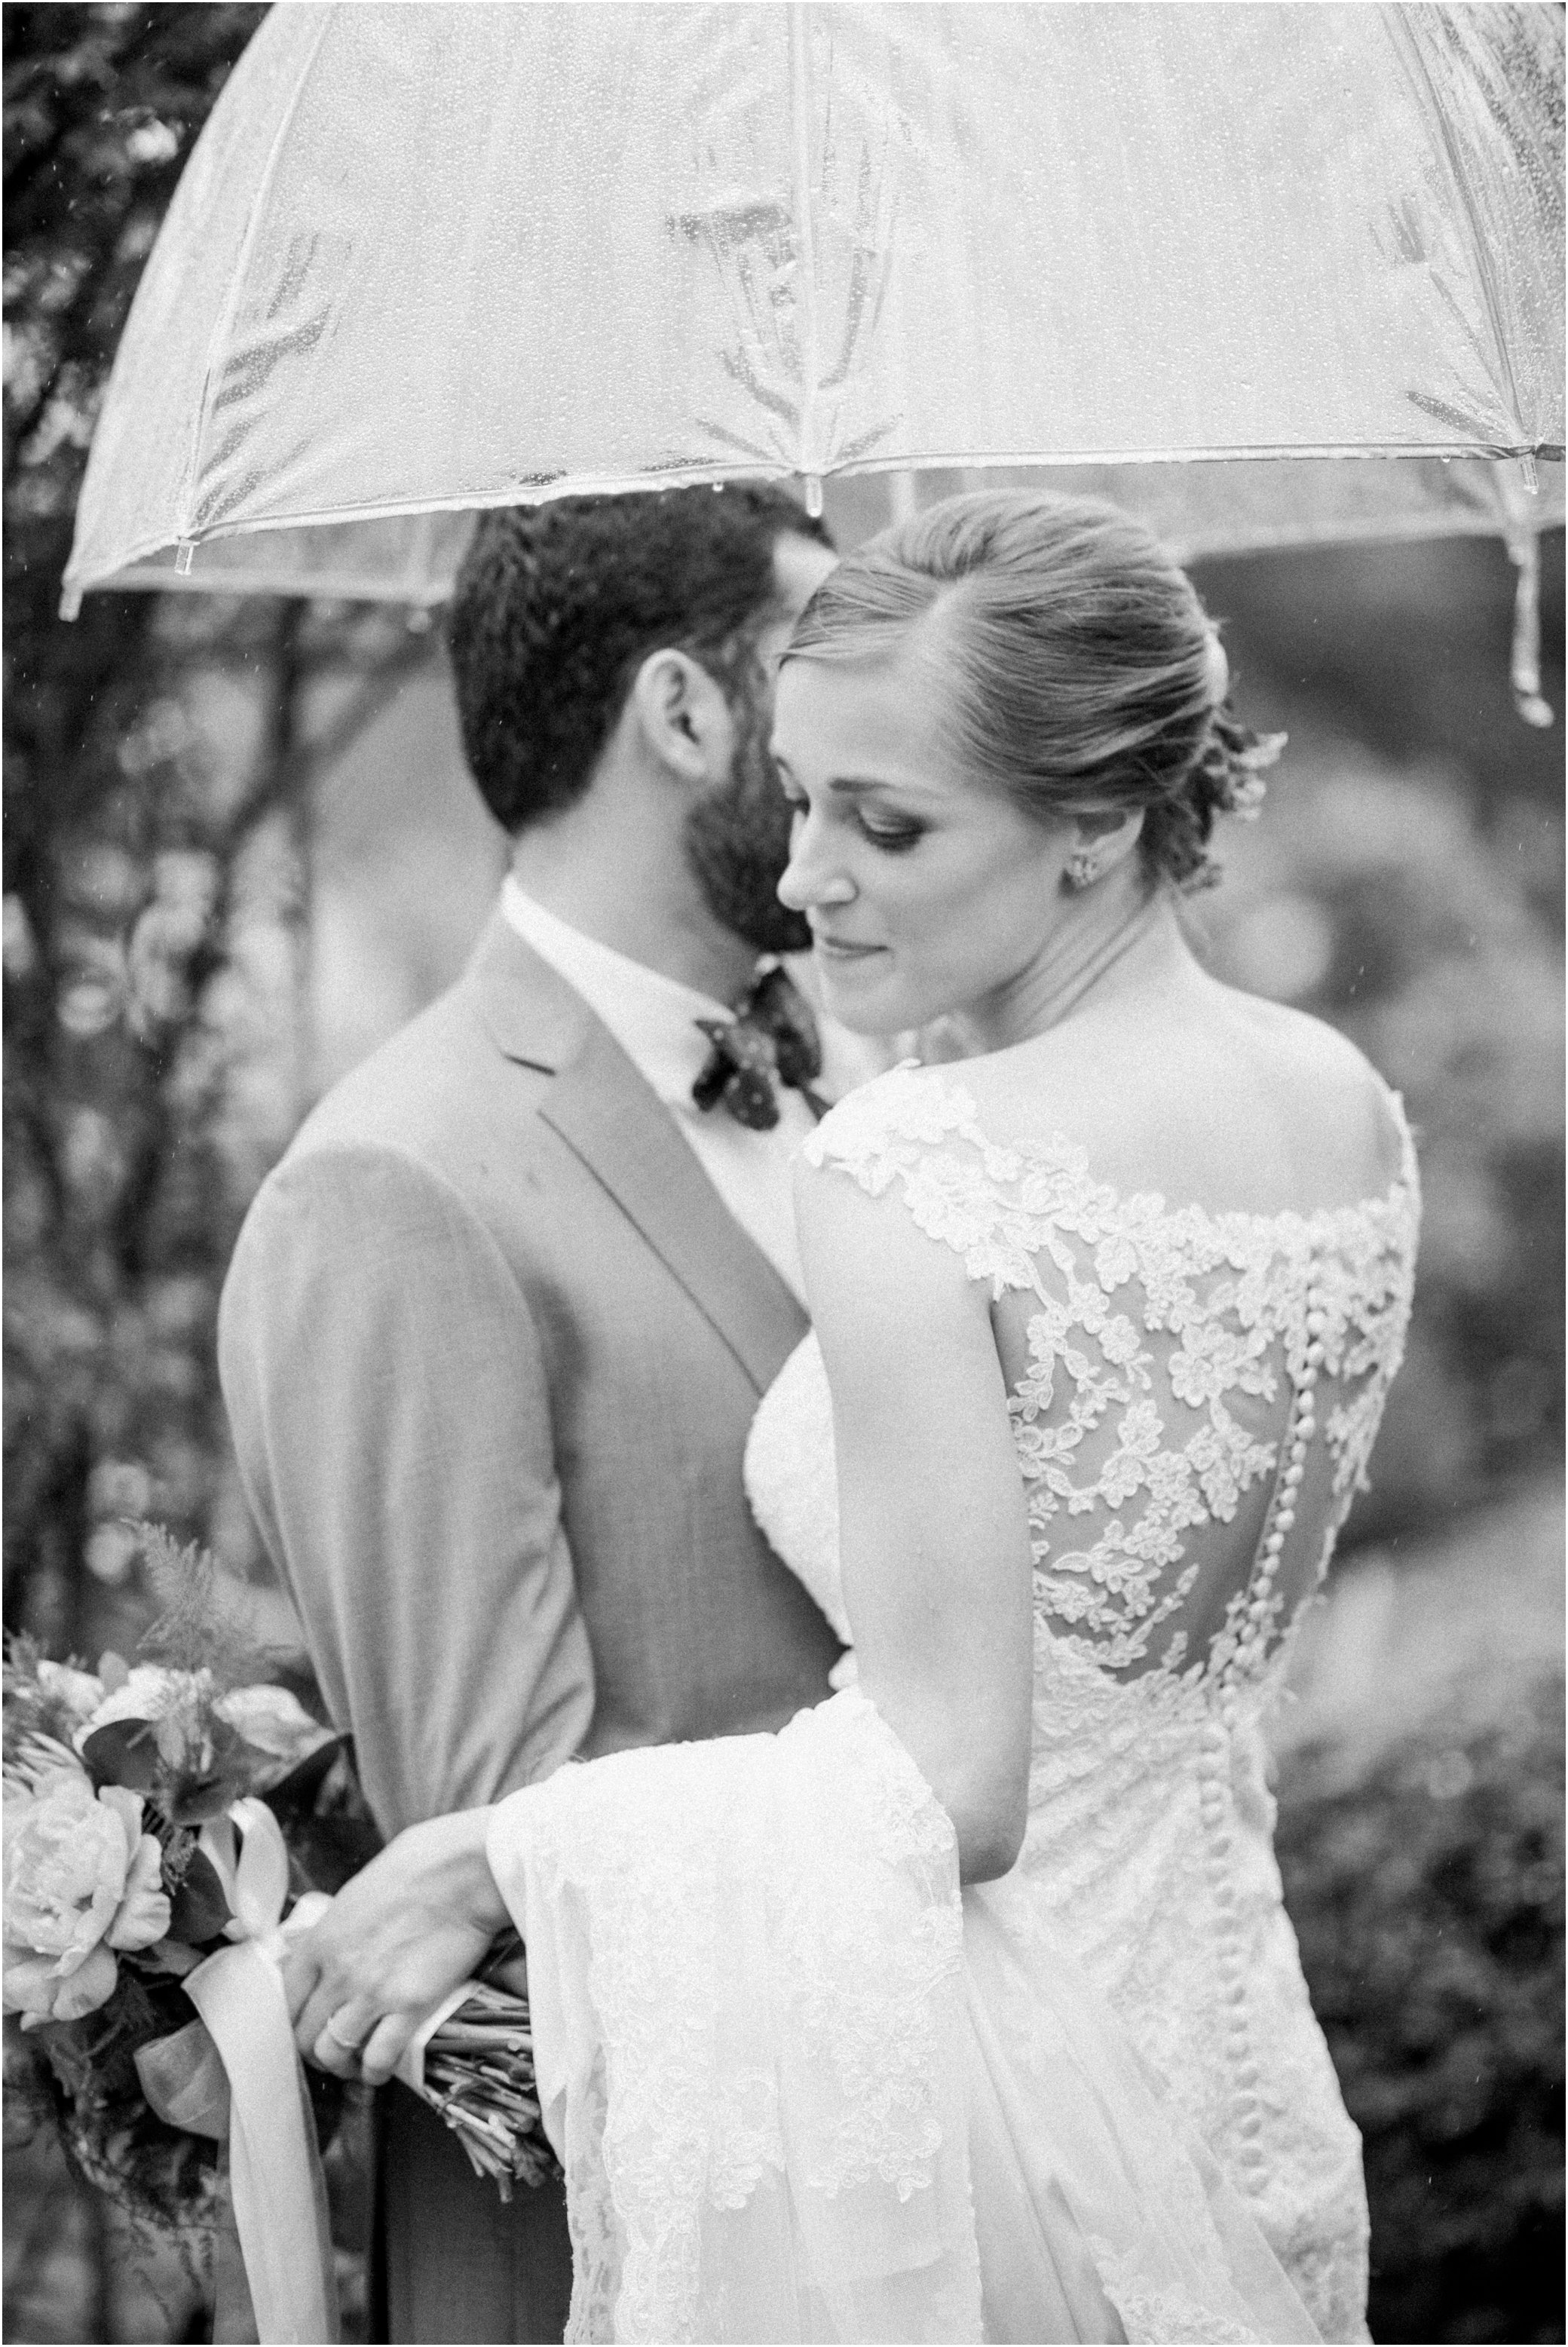 Rainy day wedding photography inspiration Easton Maryland